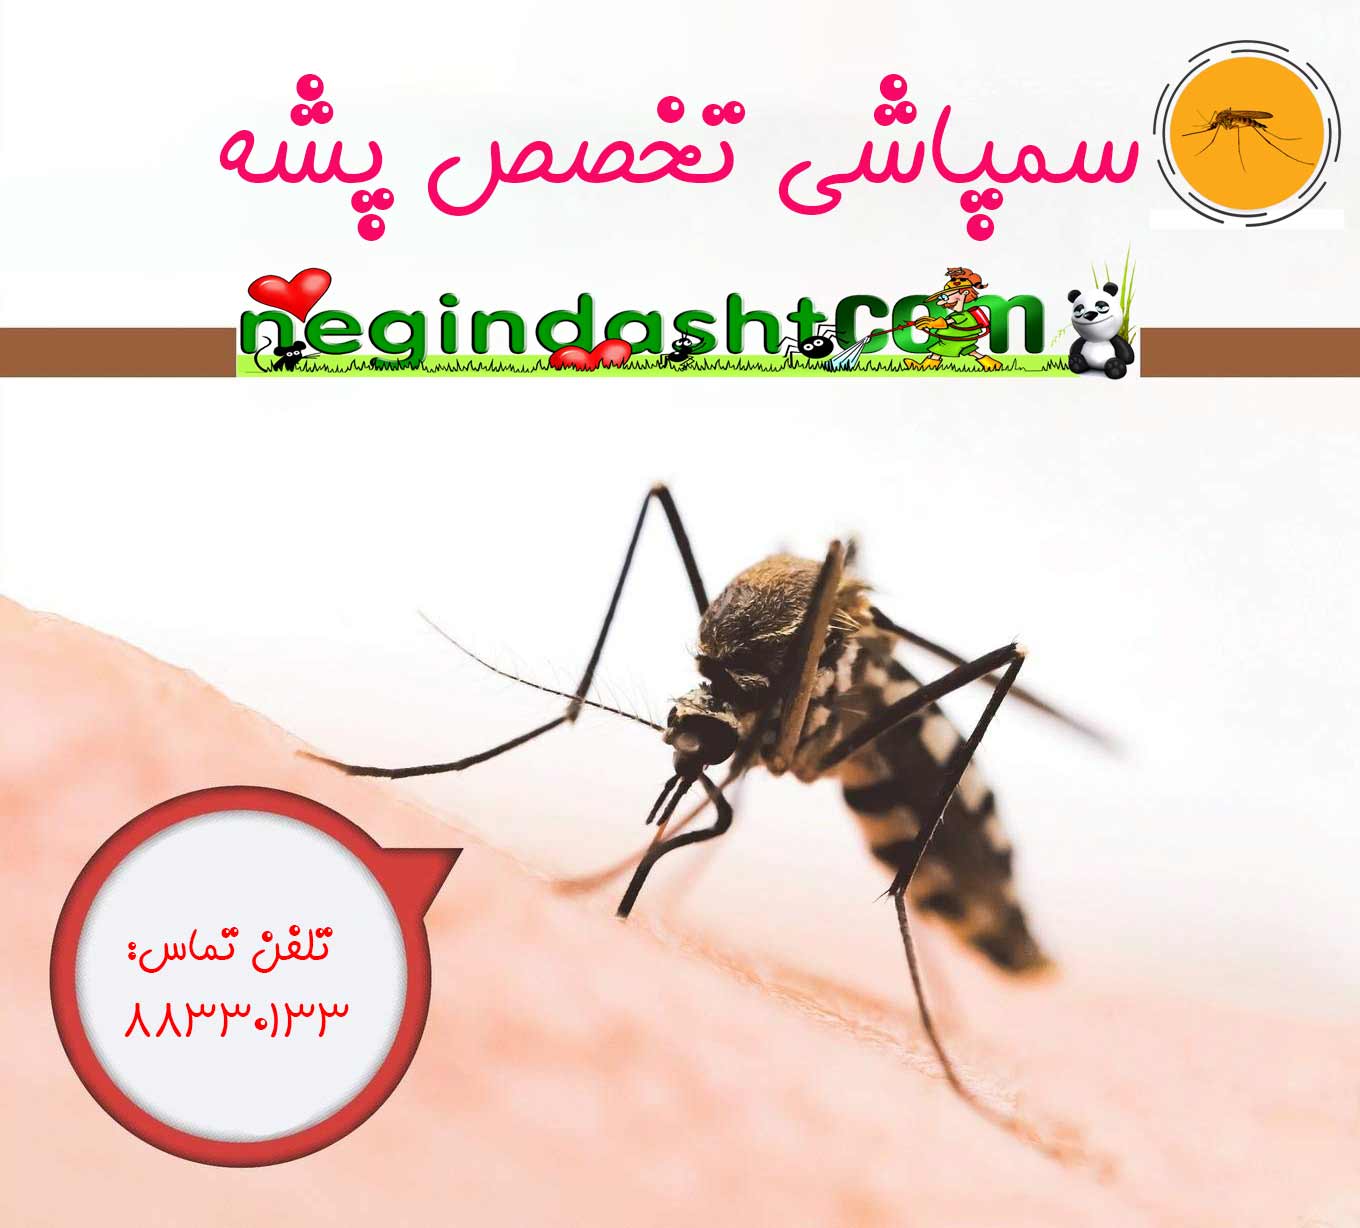 Mosquito diseases 1360 x 1228